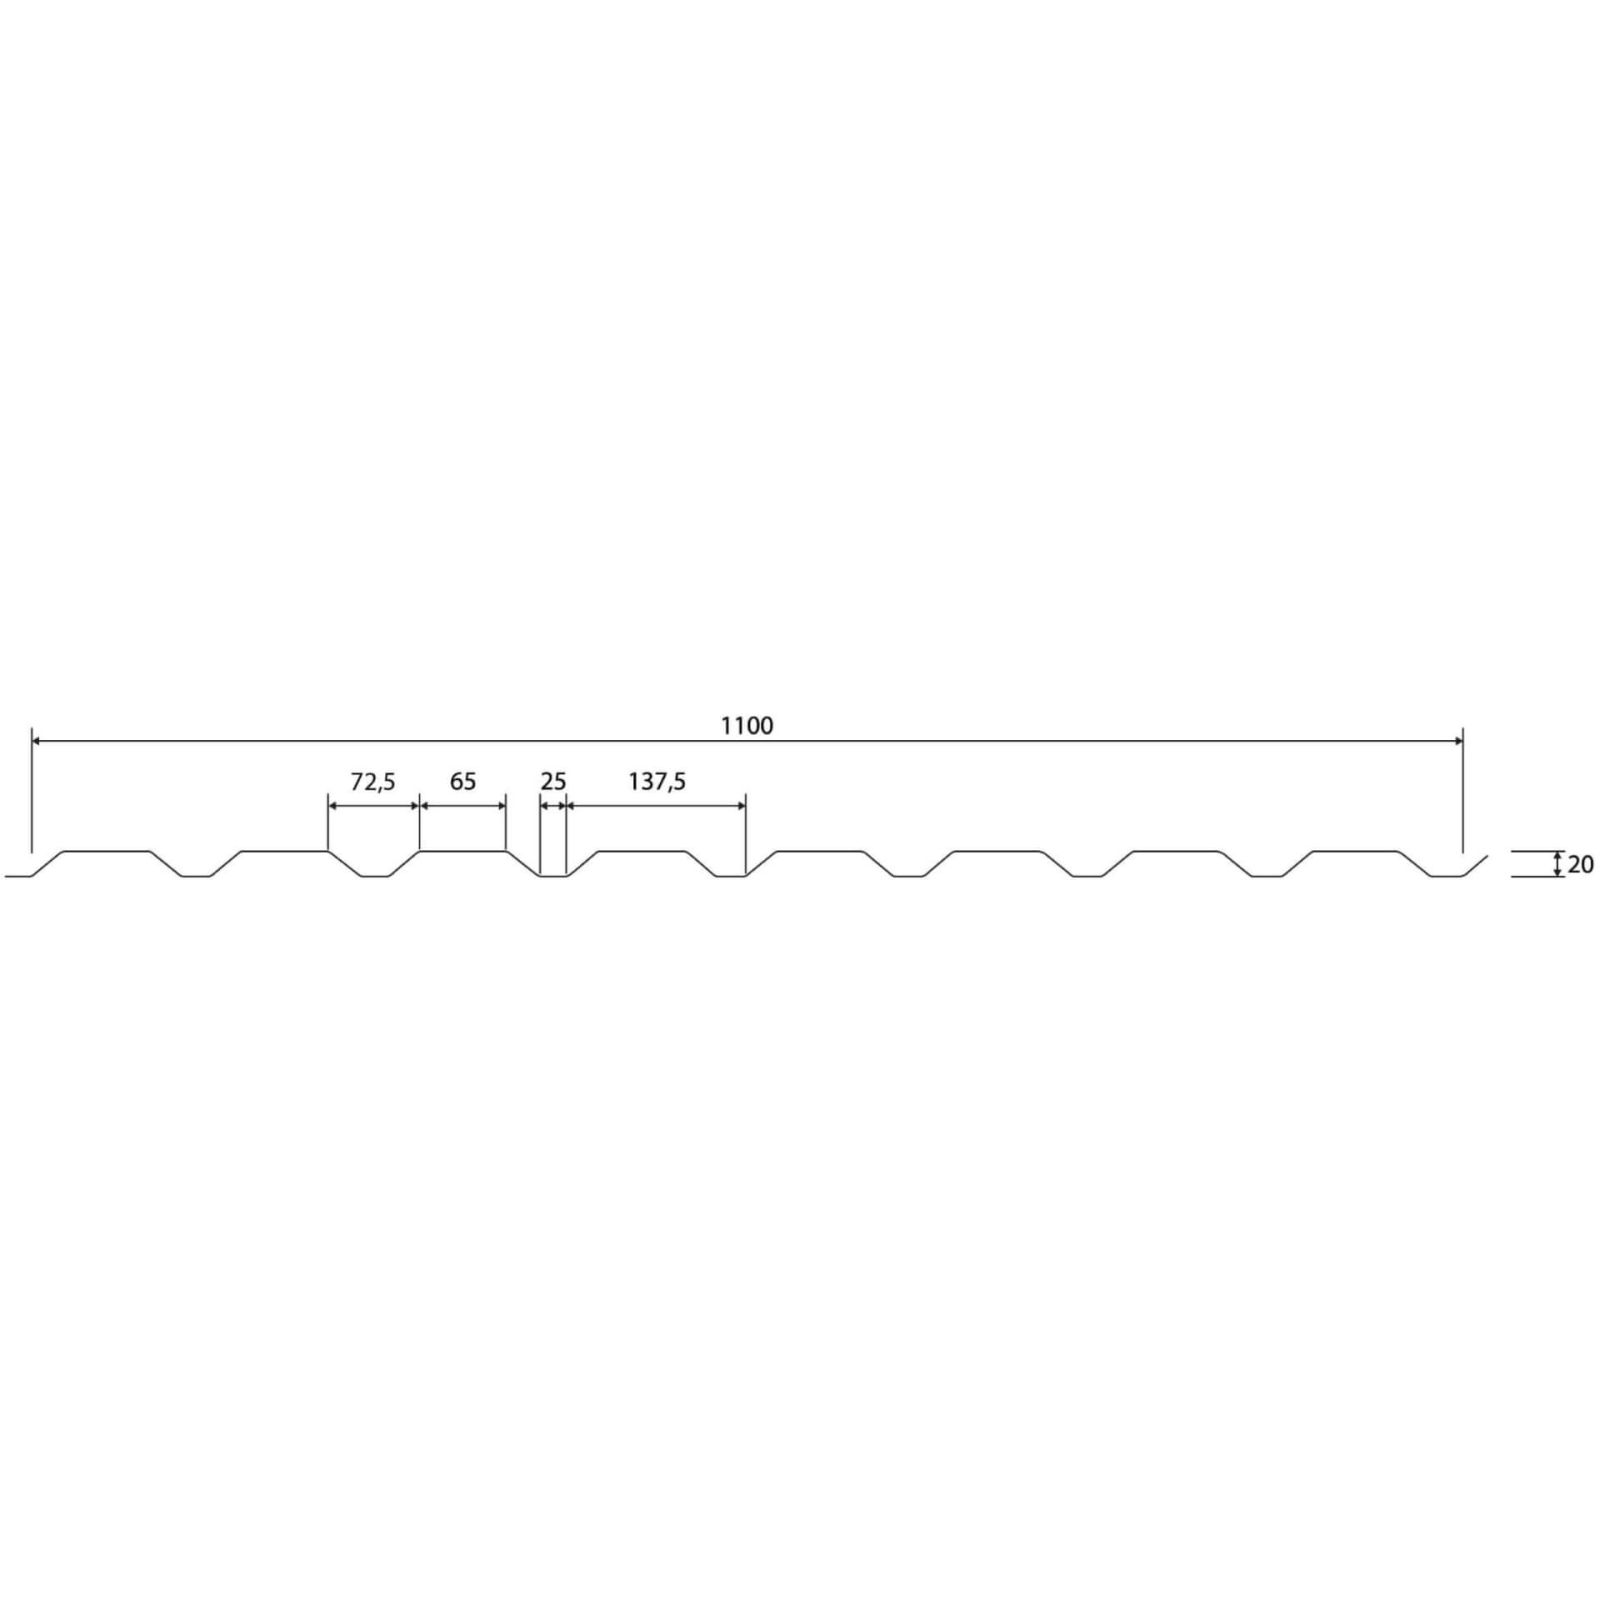 Trapezblech 20/1100 | Wand | Stahl 0,50 mm | 25 µm Polyester | 8004 - Kupferbraun #5